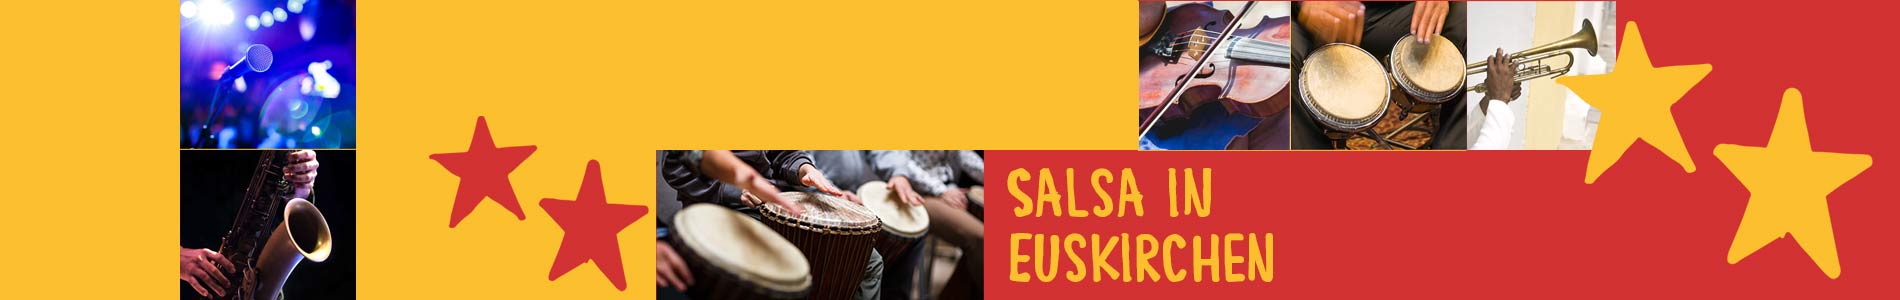 Salsa in Euskirchen – Salsa lernen und tanzen, Tanzkurse, Partys, Veranstaltungen